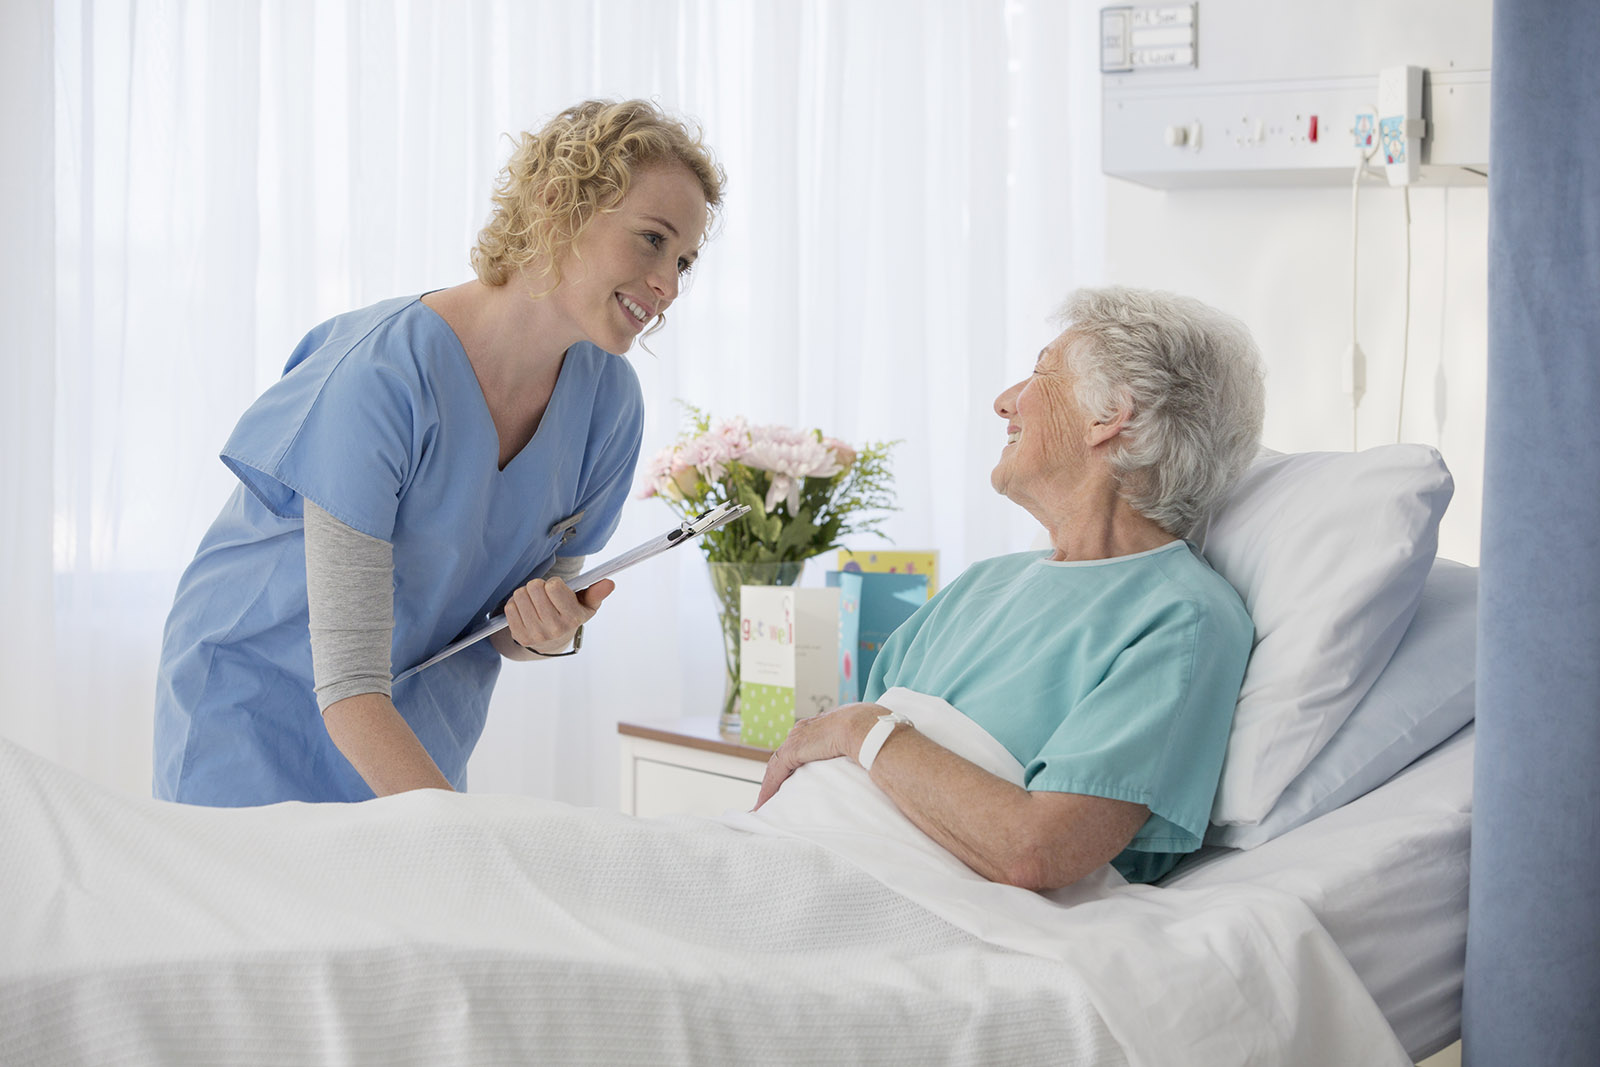 Kvinna lutar sig fram mot en äldre kvinna i en sjukvårdssäng